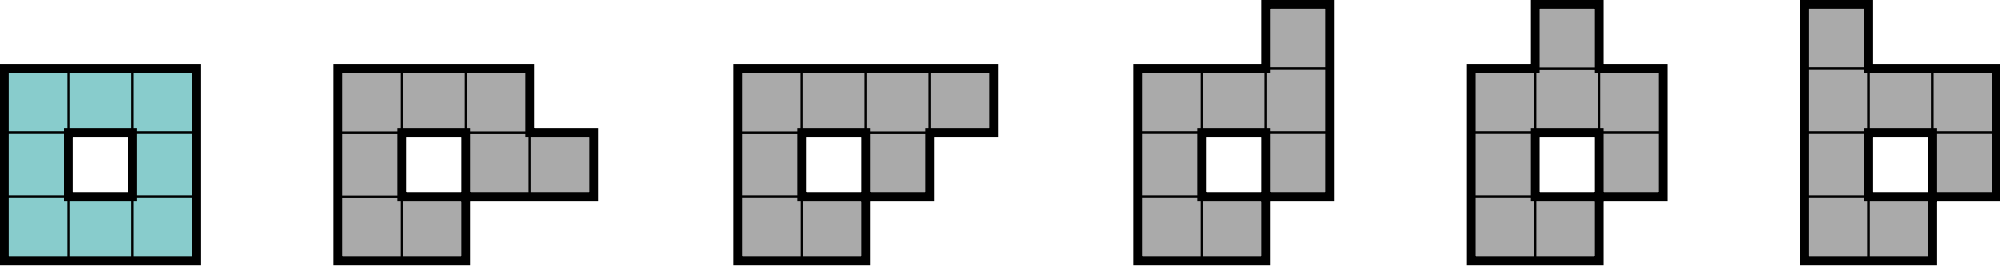 8-block tetris pieces